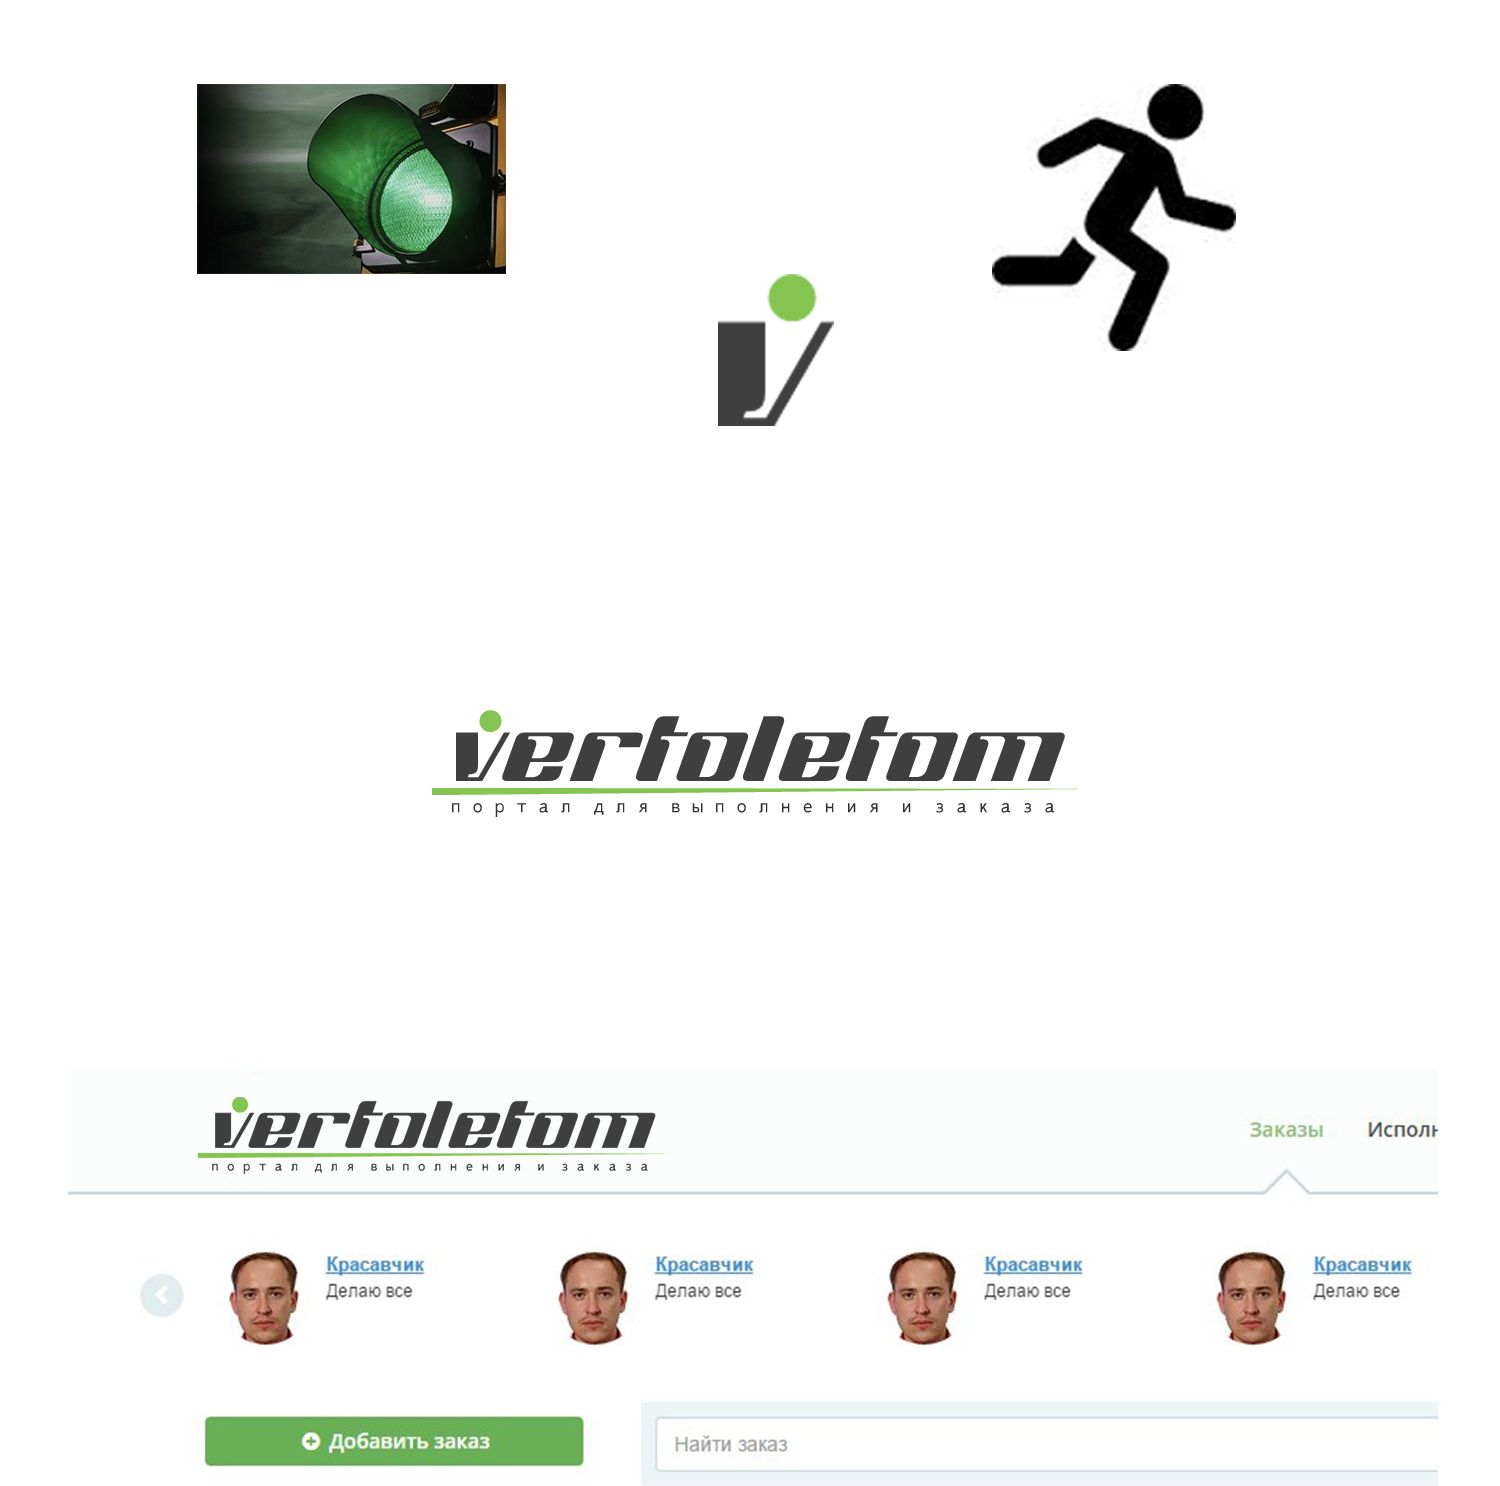 Логотип для vertoletom - дизайнер SmolinDenis